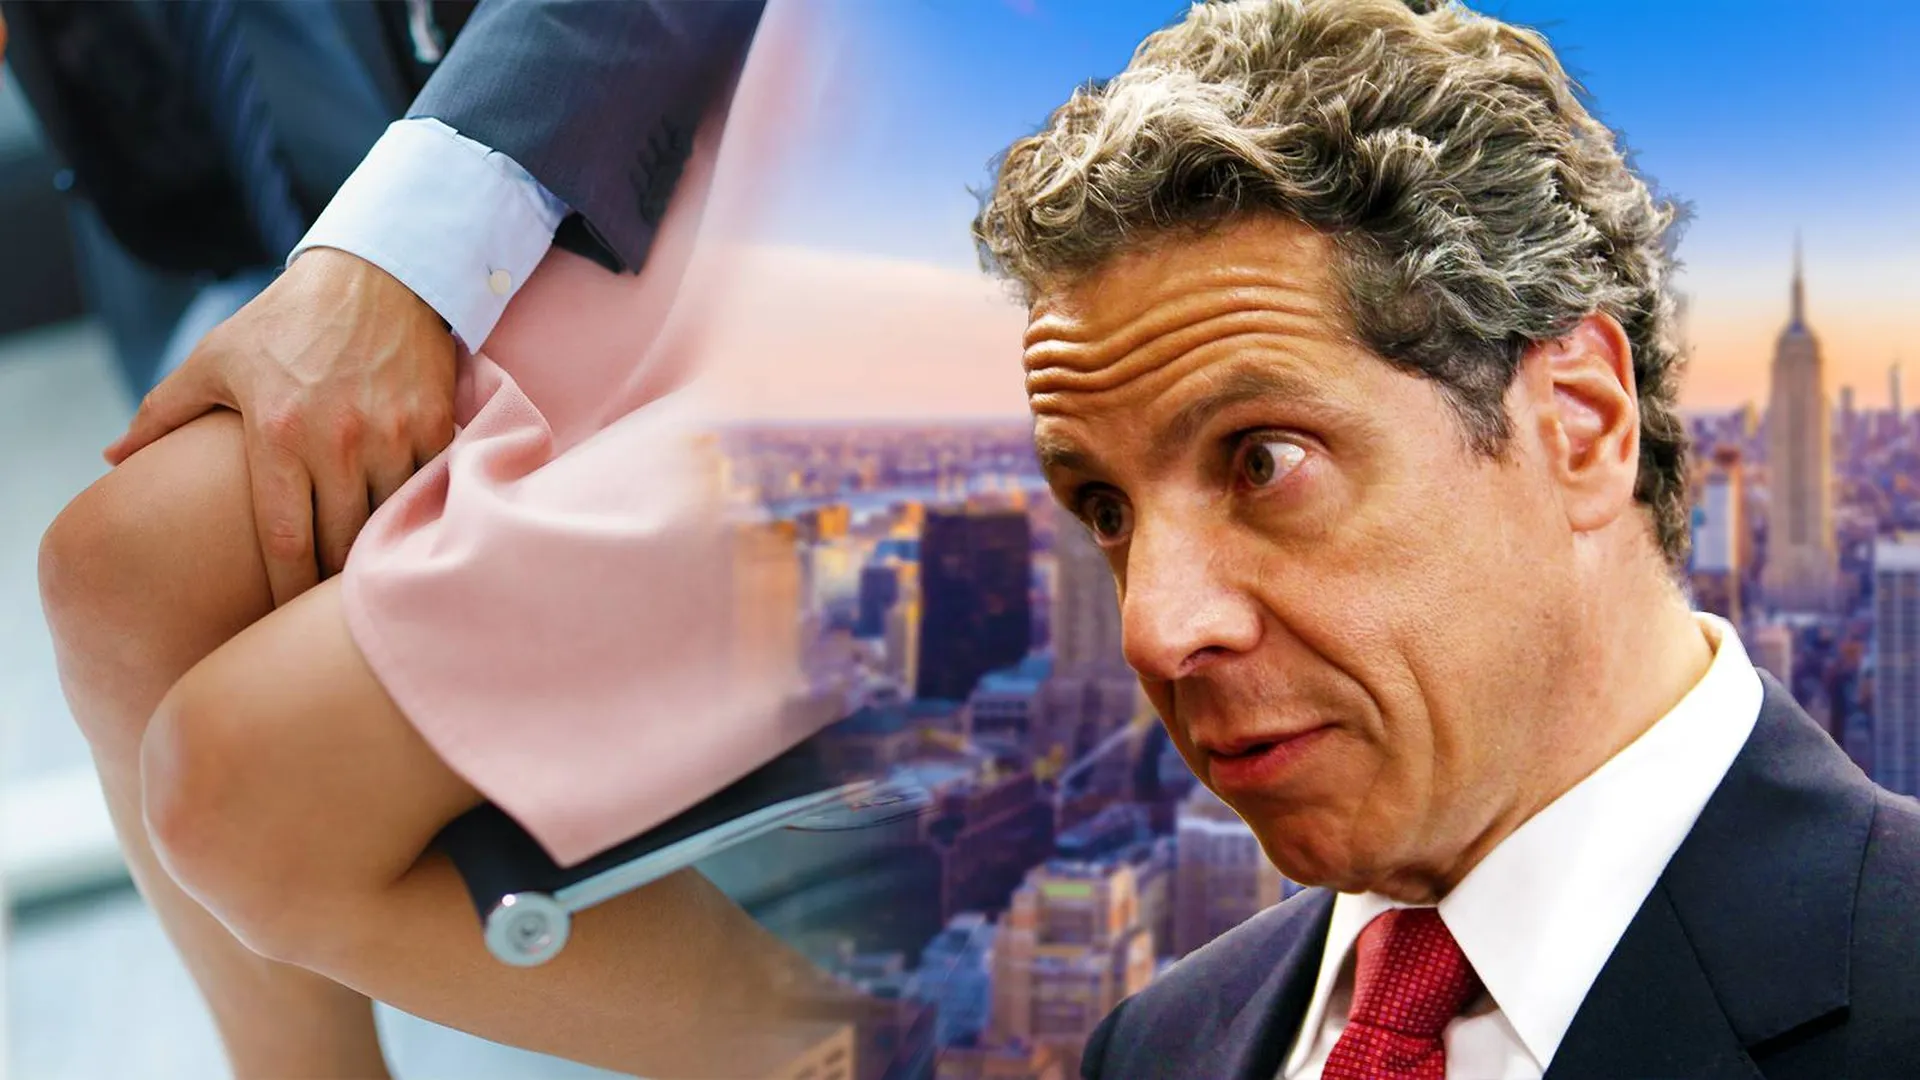 Секс-скандал вокруг губернатора Нью-Йорка. Отправить Куомо в отставку требует президент США